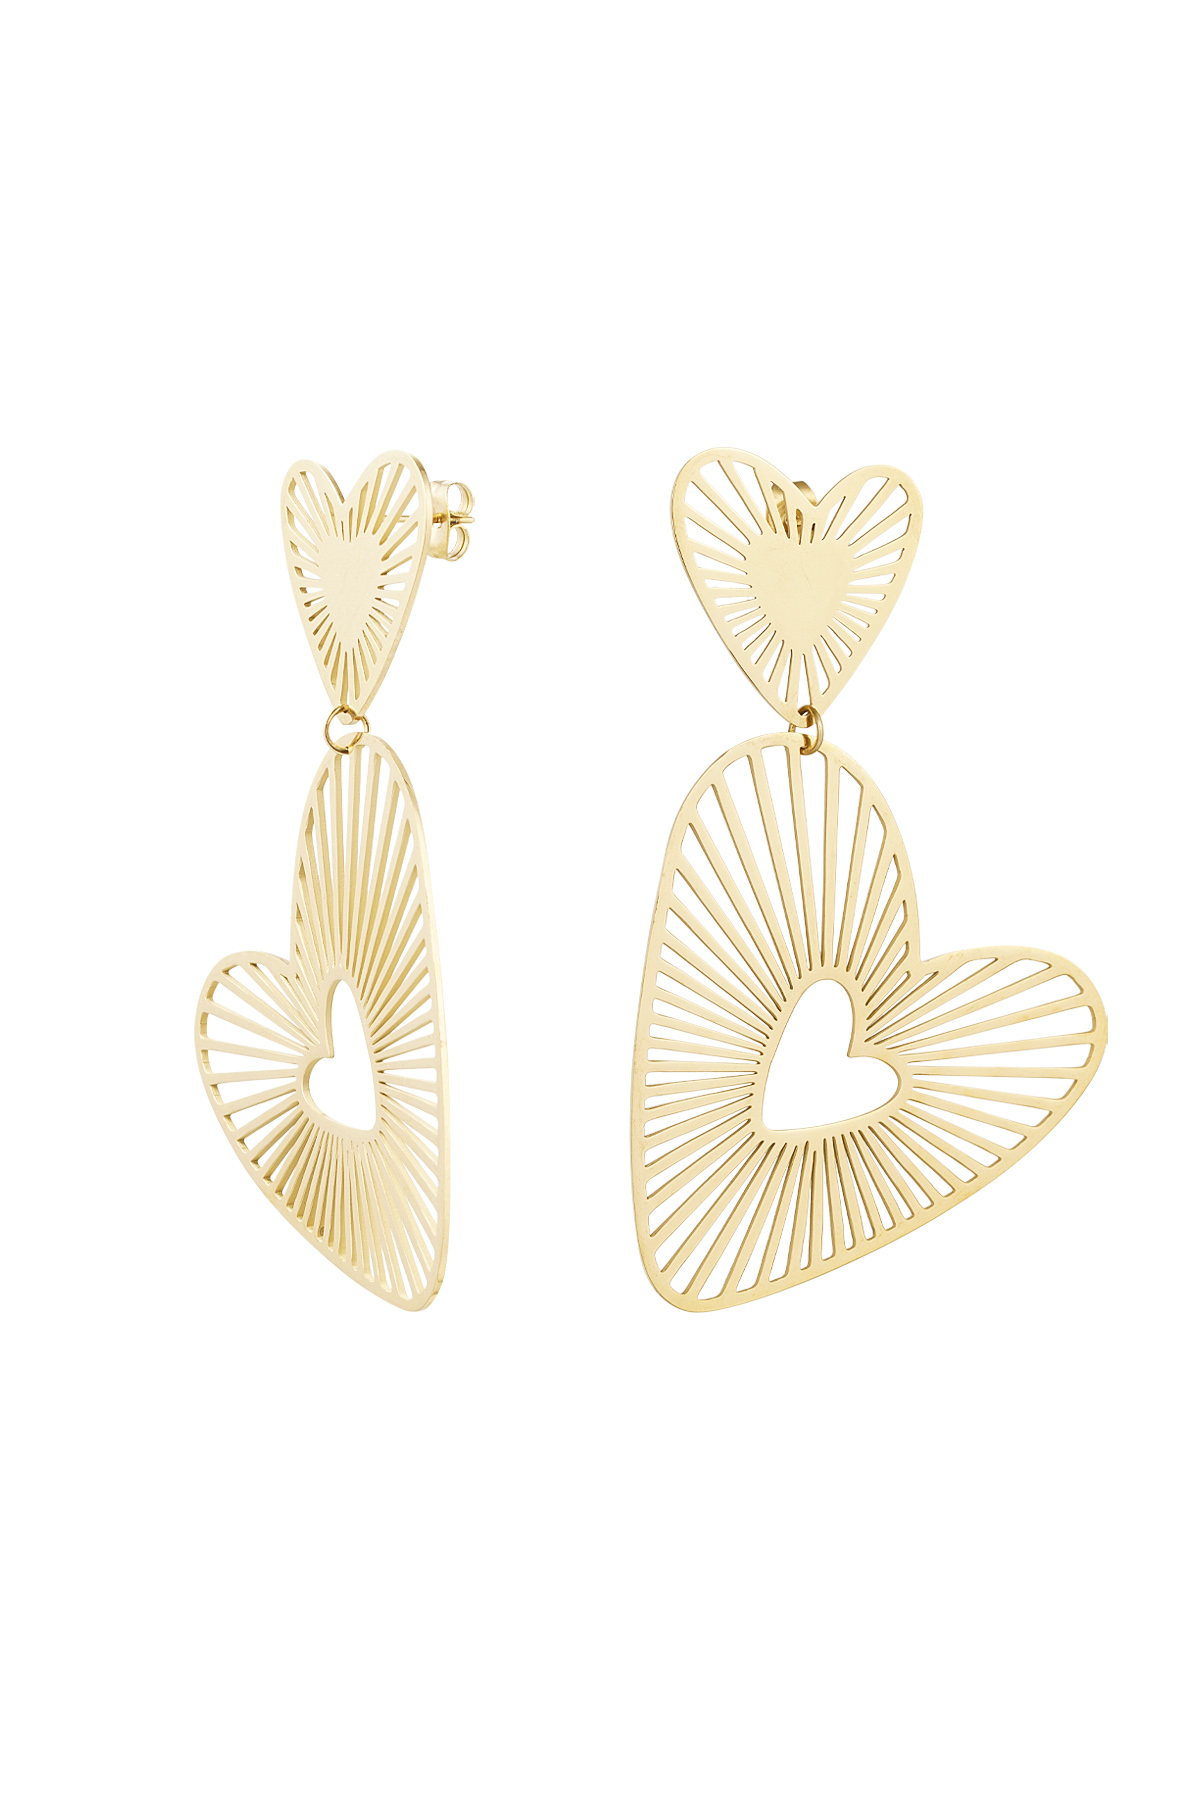 Double heart earrings - gold